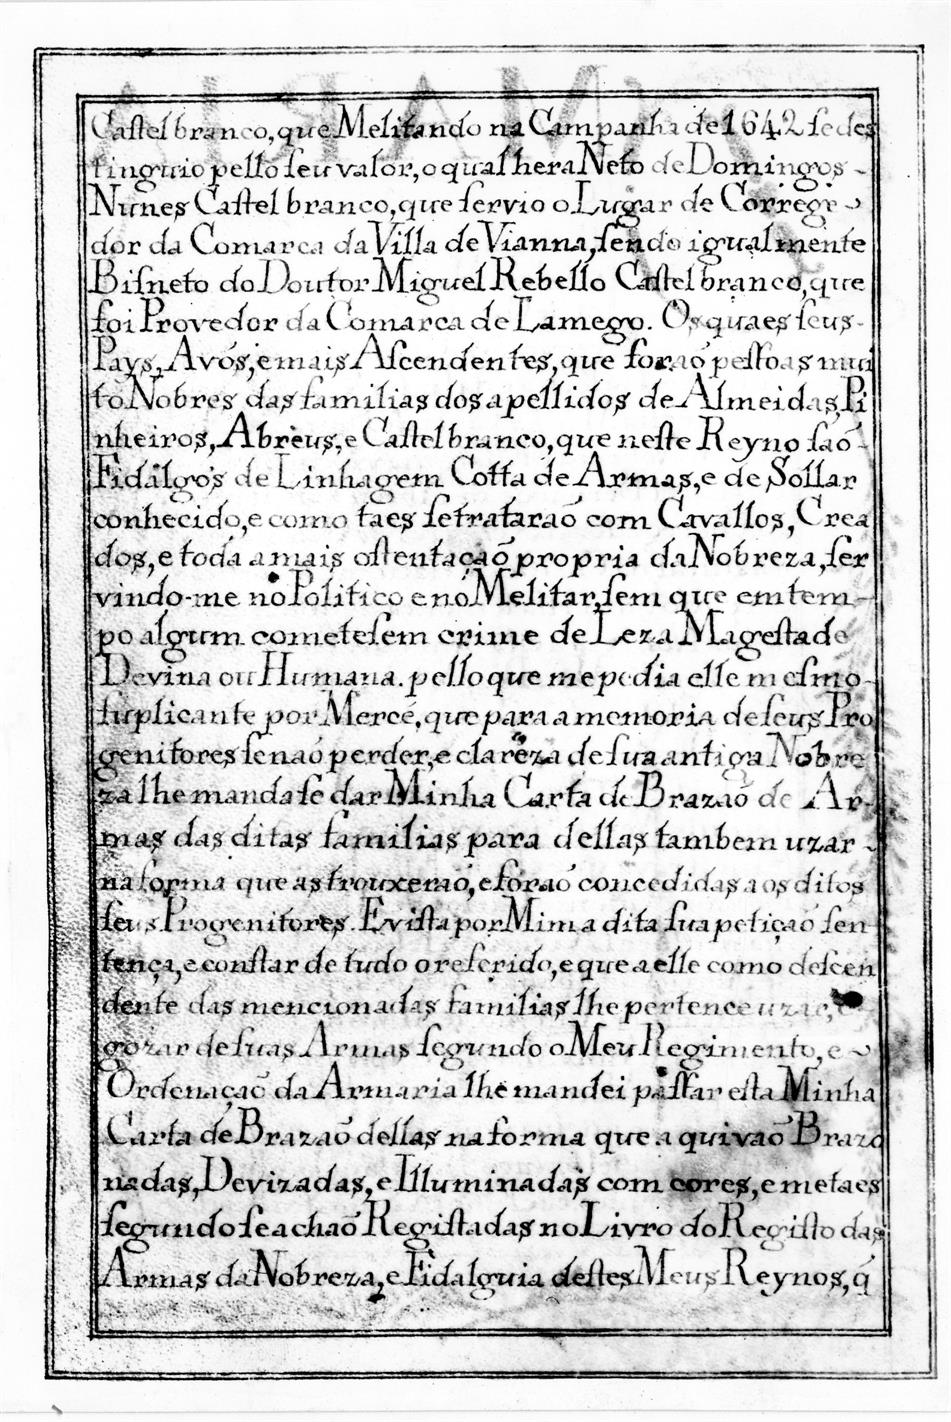 Carta de Brasão de Armas de Bernardo de Abreu Castelbranco